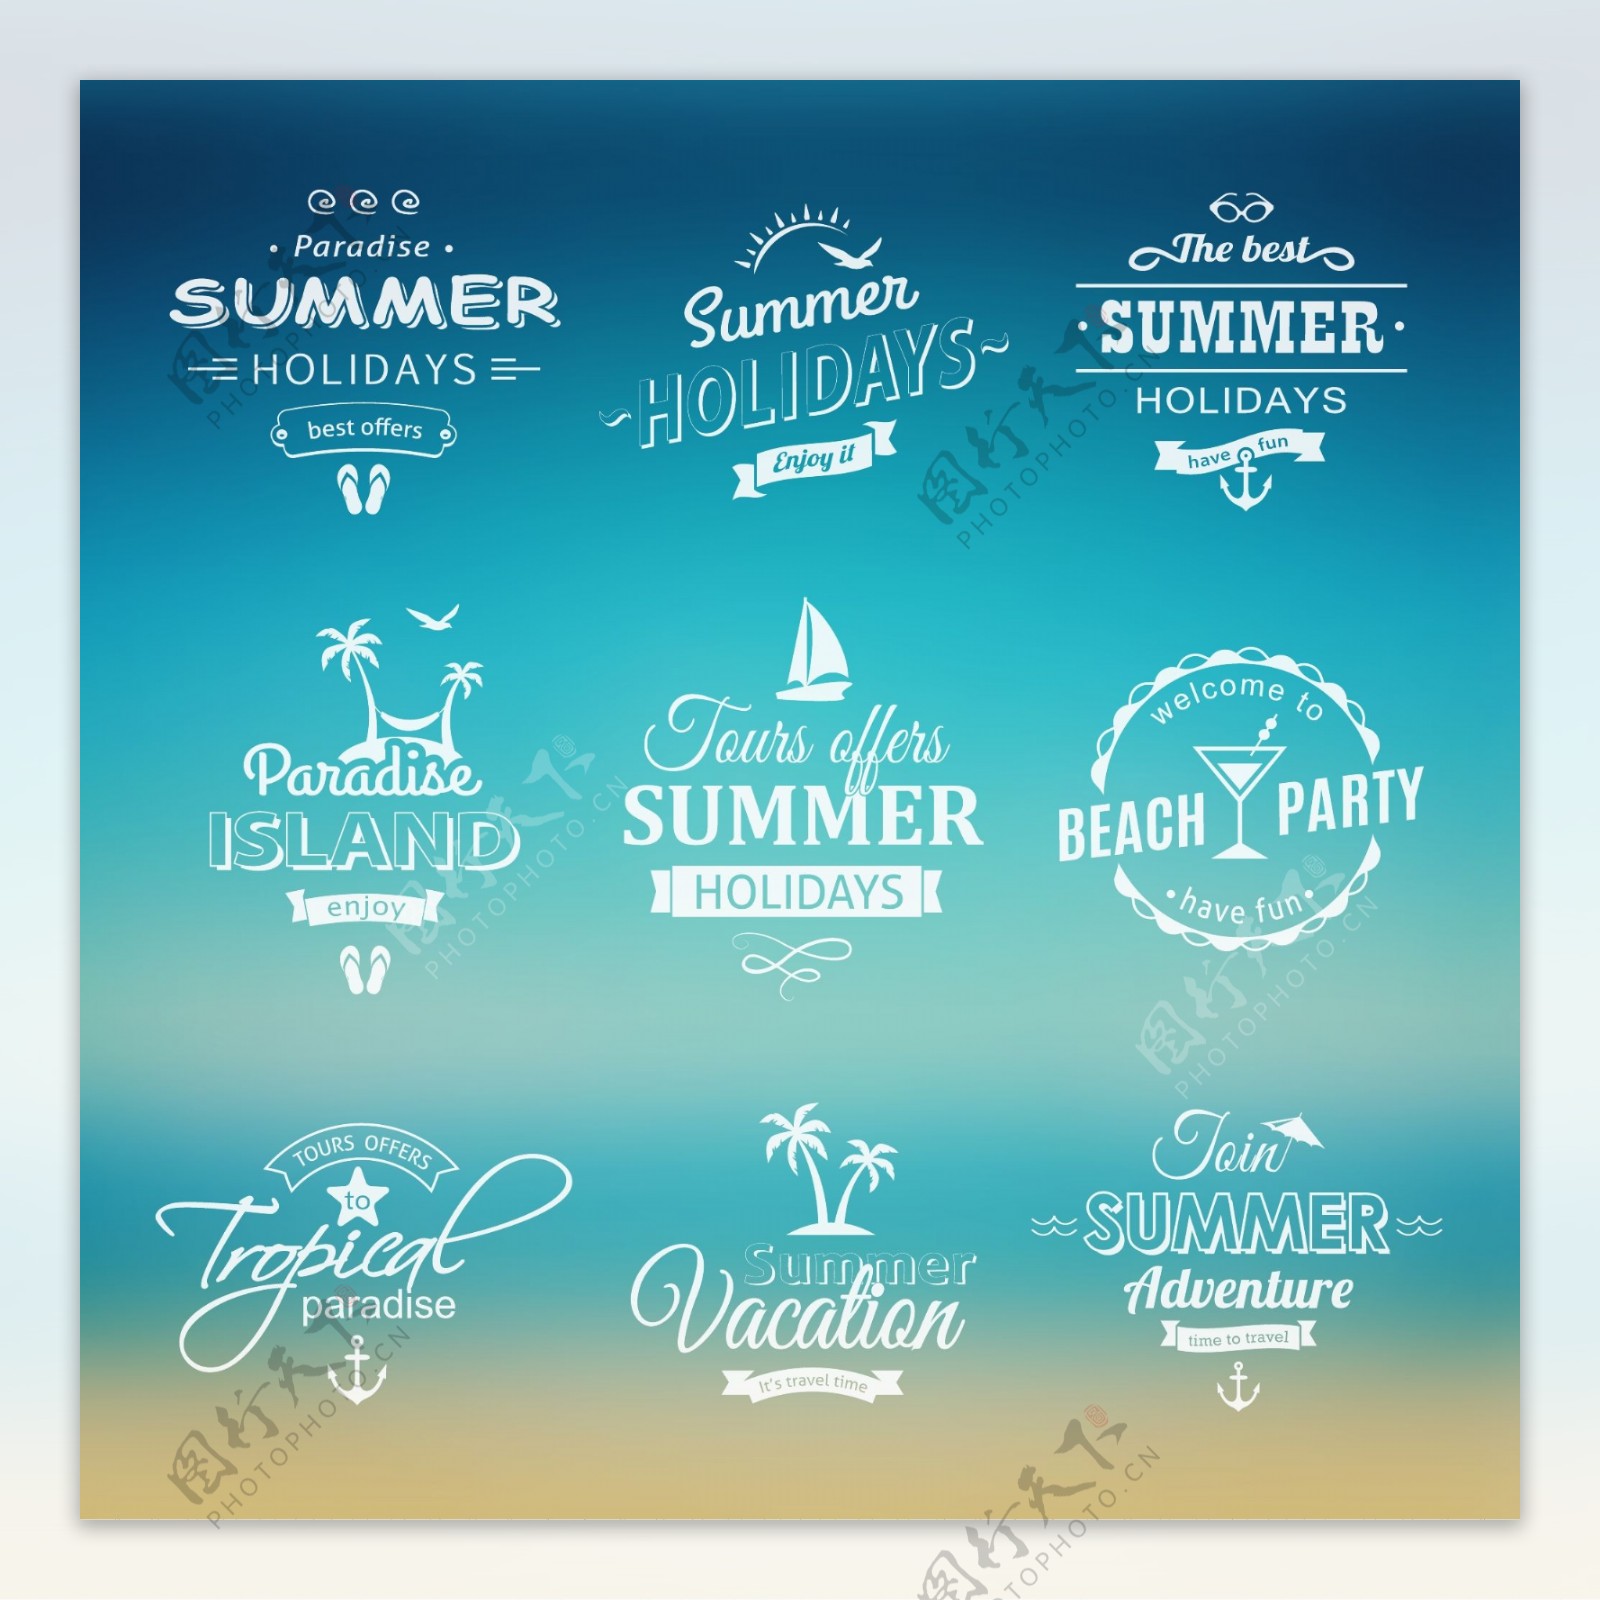 夏季旅游宣传设计矢量素材